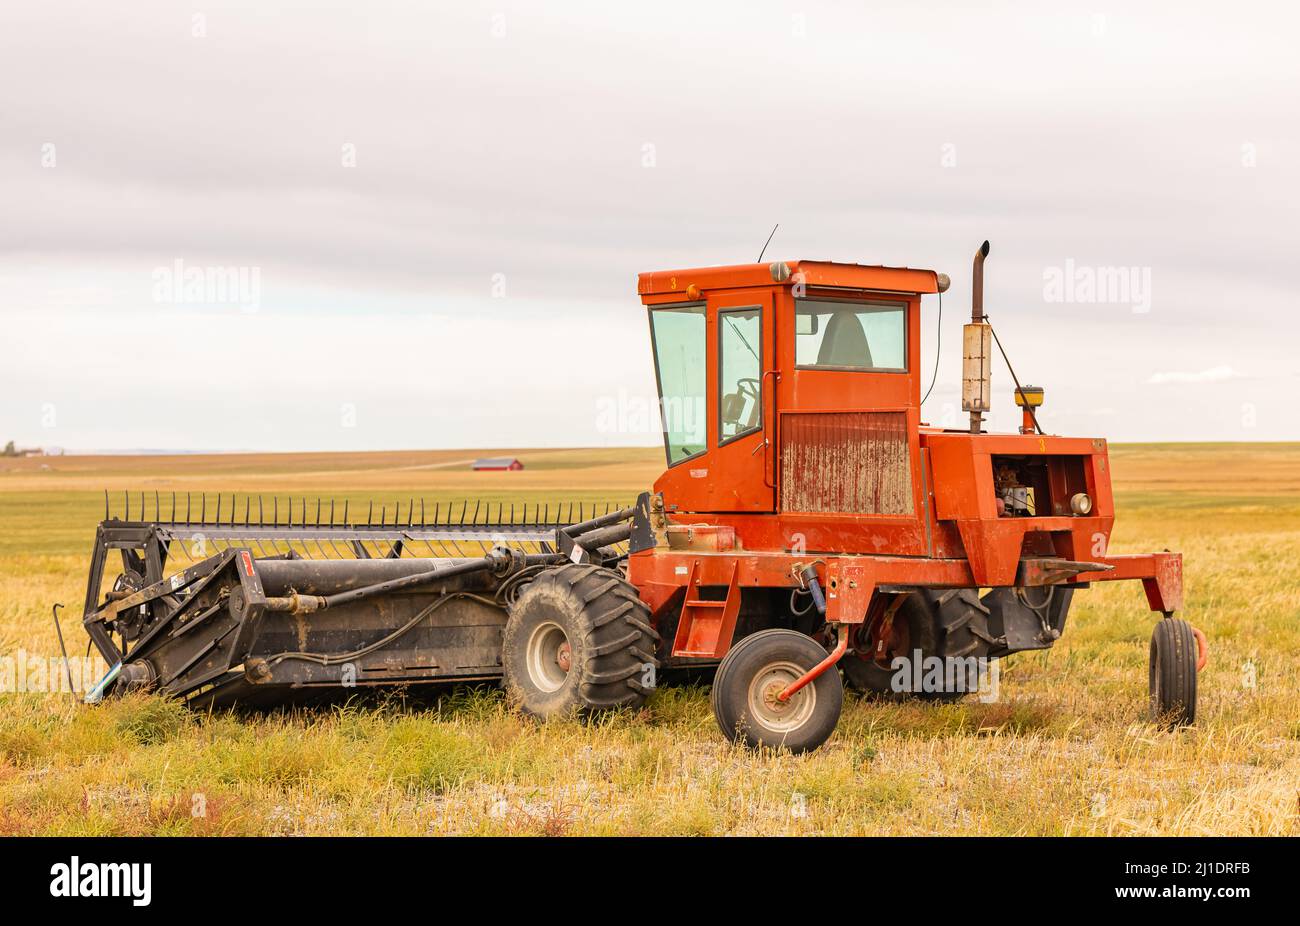 Tracteur labourant les champs au printemps ou en automne. Photo de rue, concept photo agriculture, sélectif-septembre 28,2021-Alberta, Canada. Banque D'Images